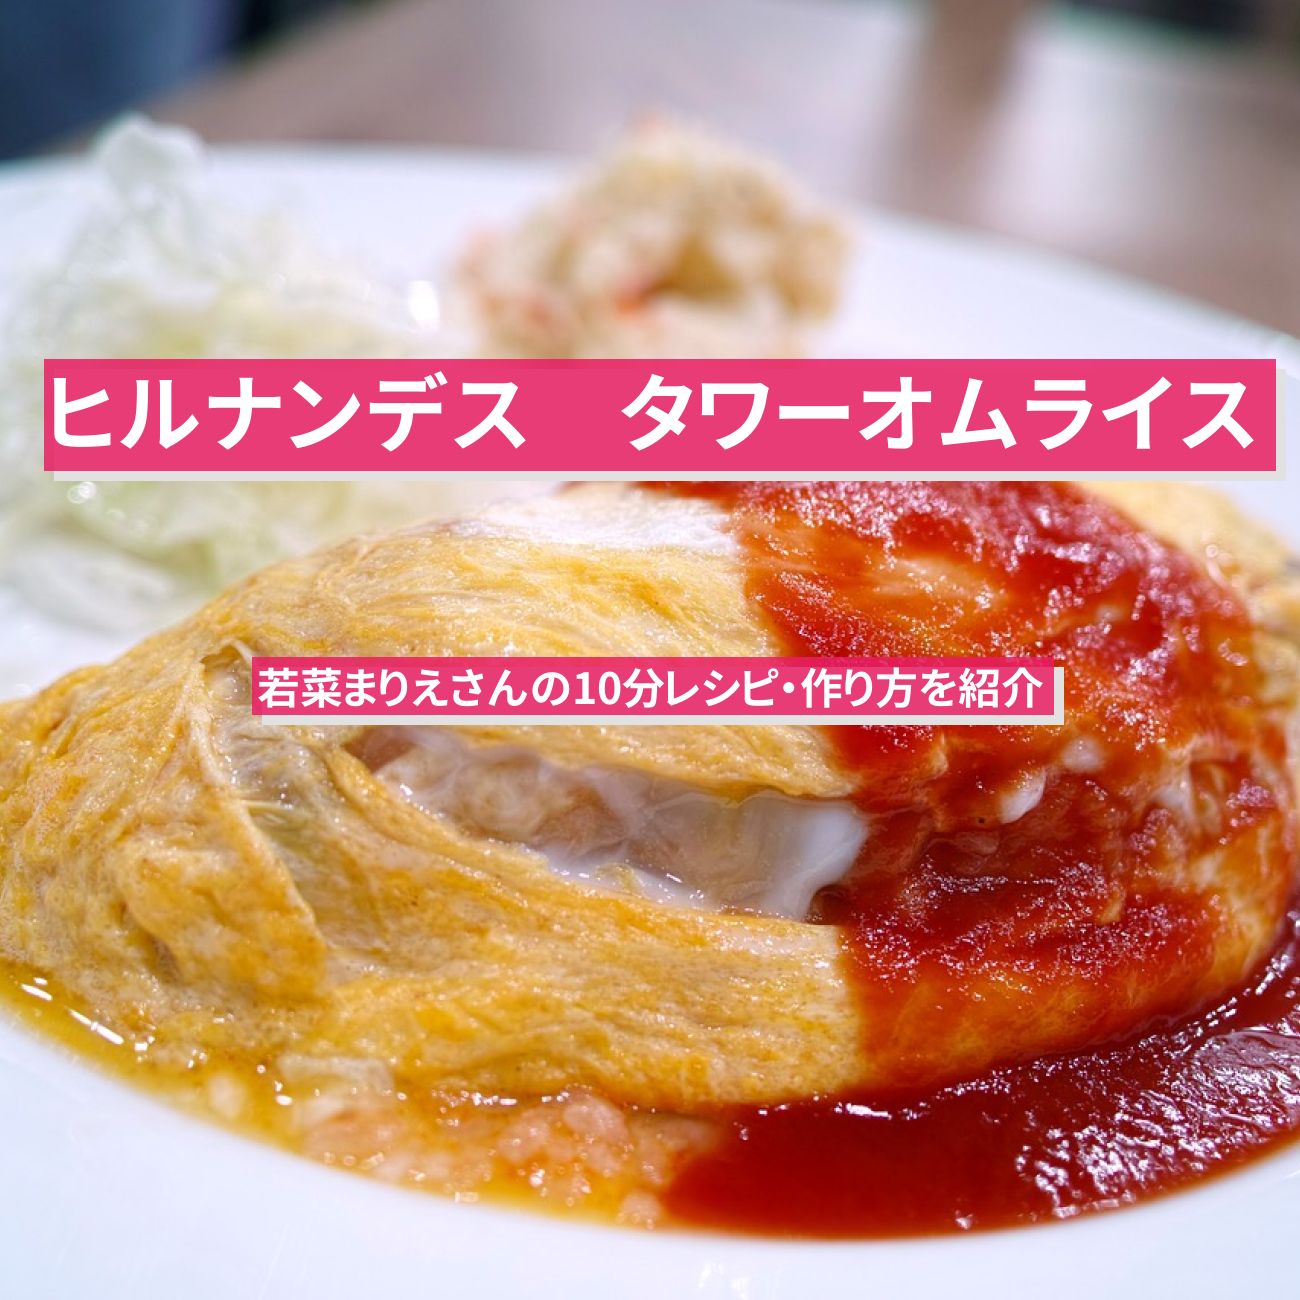 【ヒルナンデス】3品同時調理『タワーオムライス』若菜まりえさんの10分レシピ・作り方を紹介